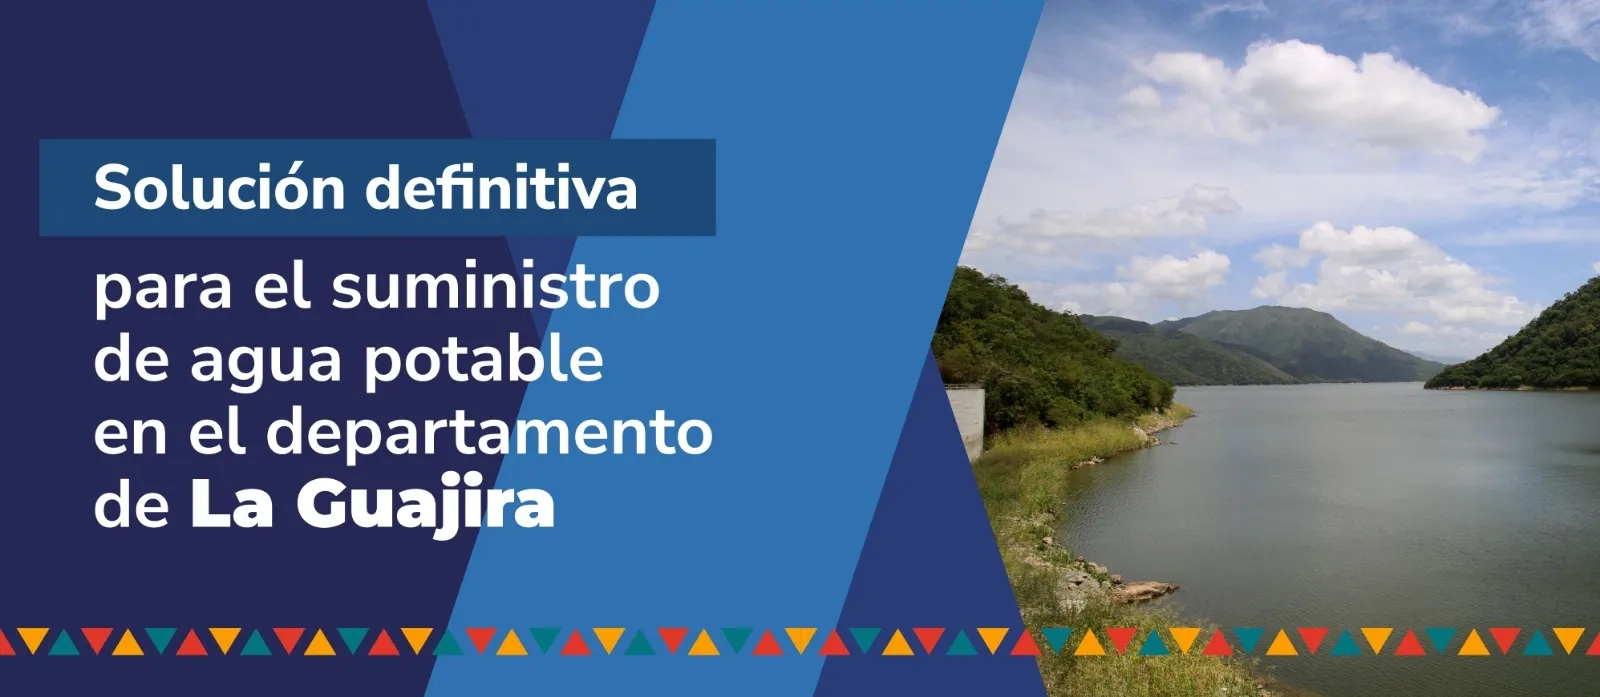 Solución definitiva para el suministro de agua potable en el departamento de La Guajira